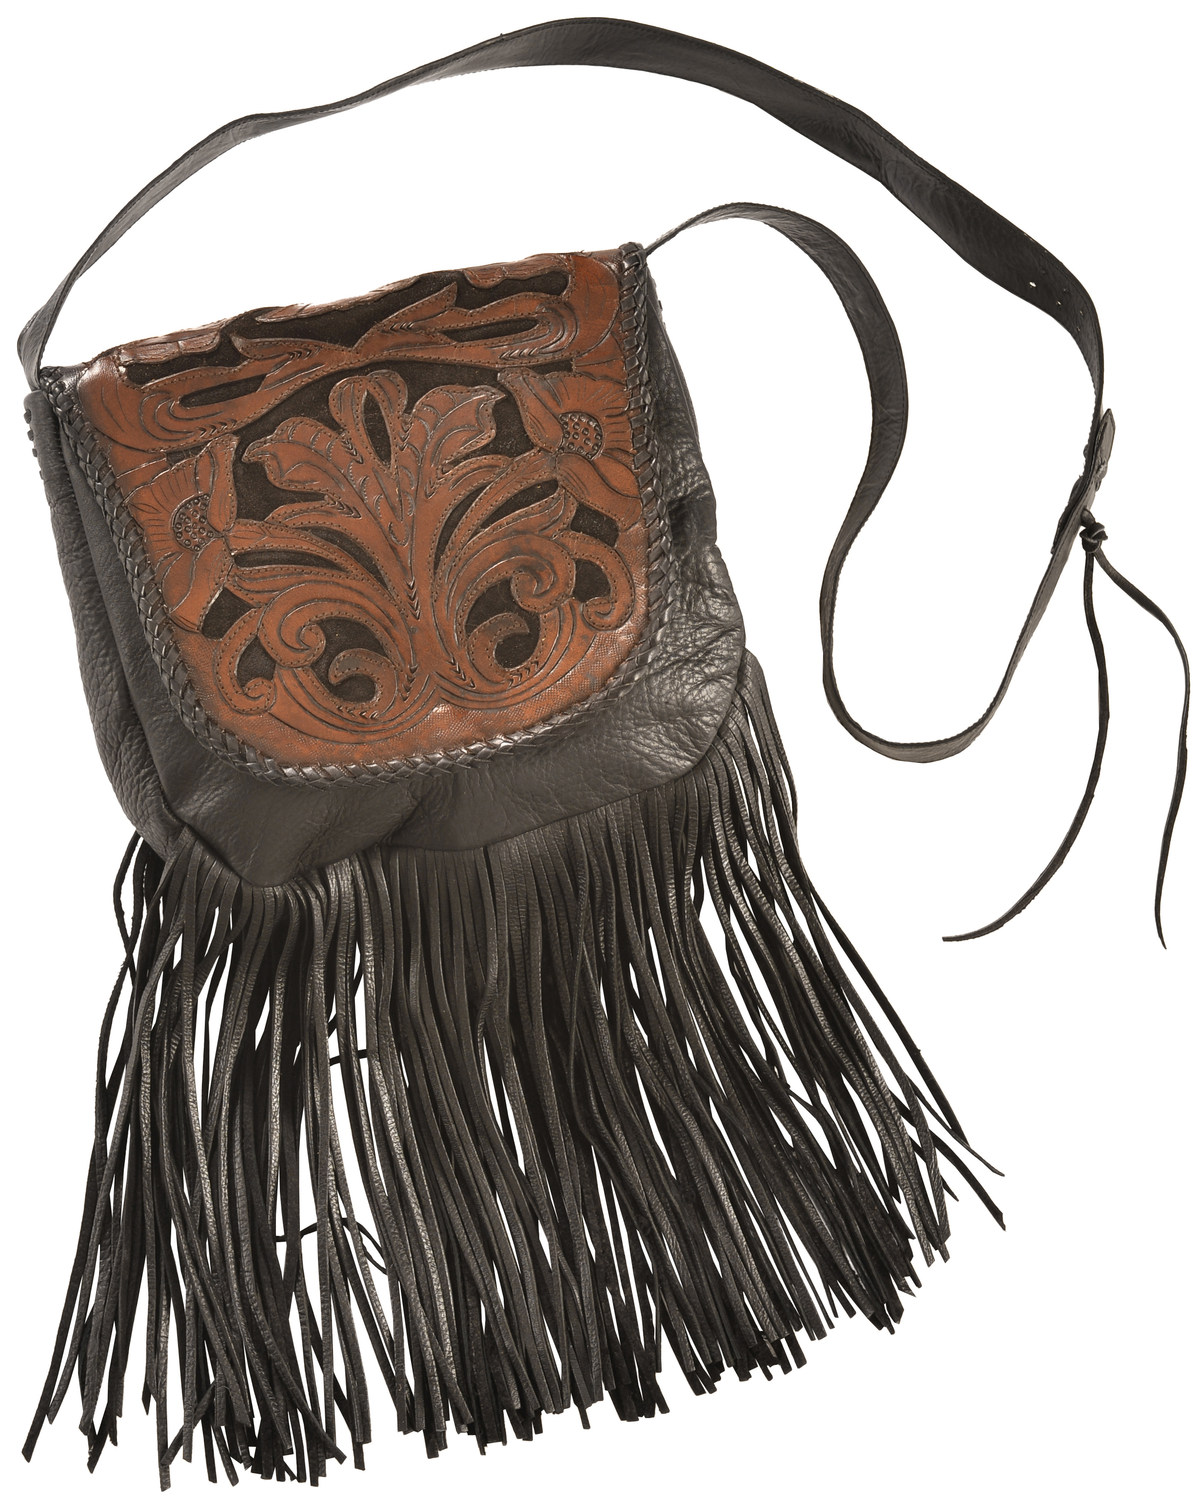 Kobler Leather Black Hand-Tooled Antique Finish Bag